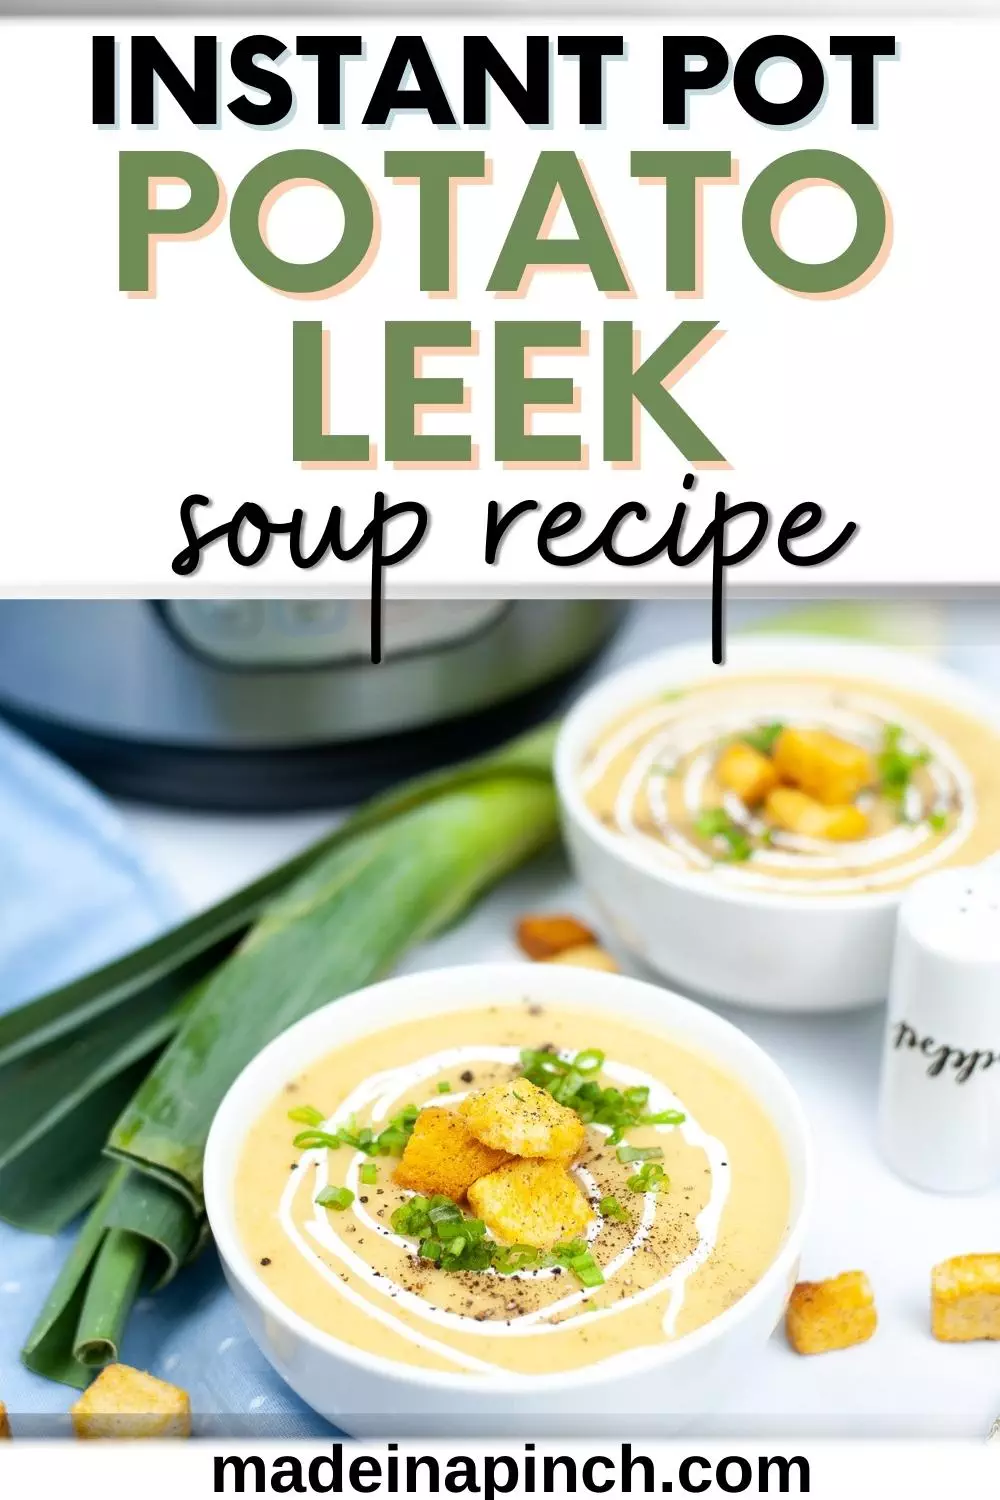 Instant pot potato leek soup recipe pin